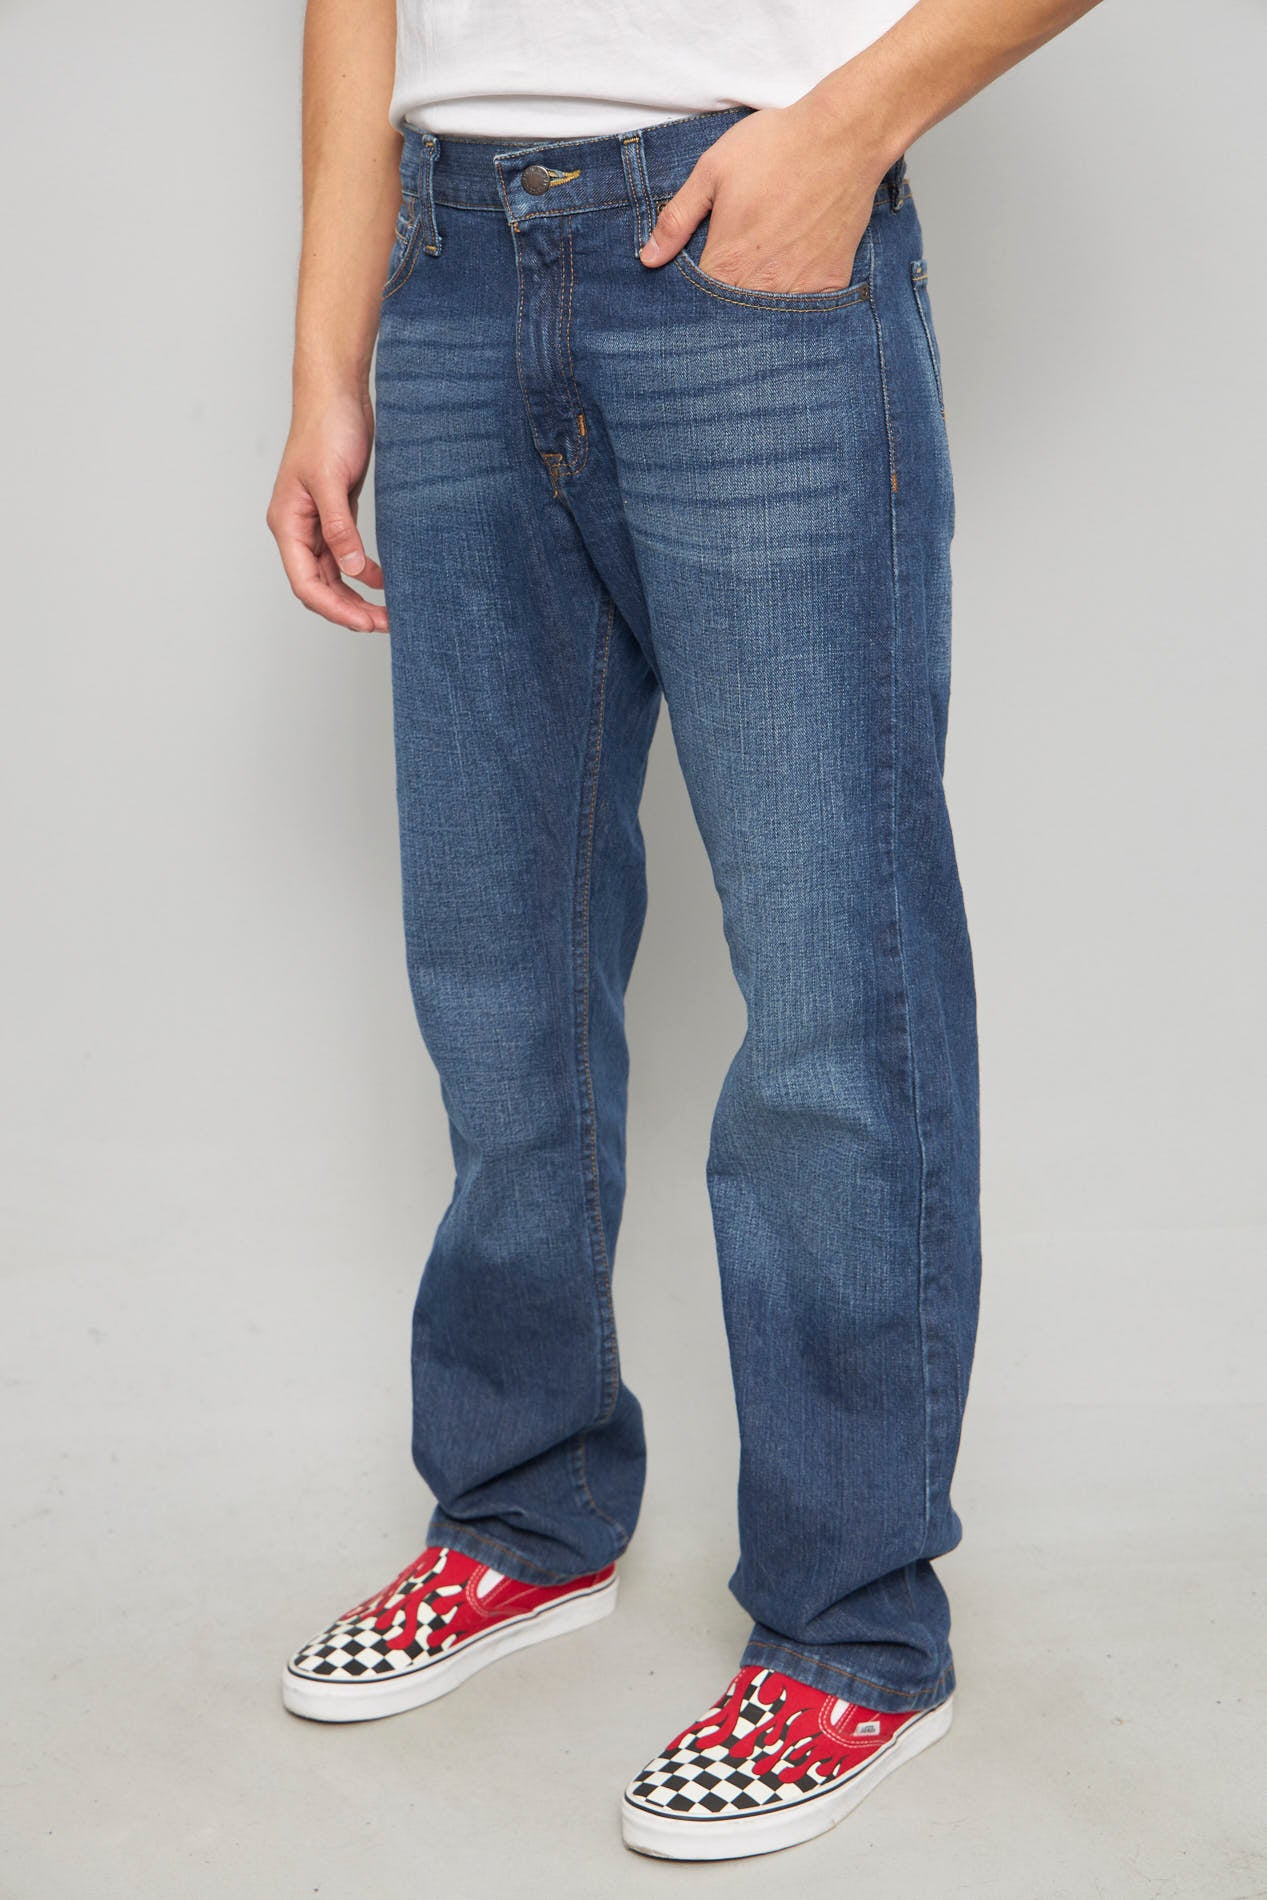 Jeans casual  azul nautica talla 40 052